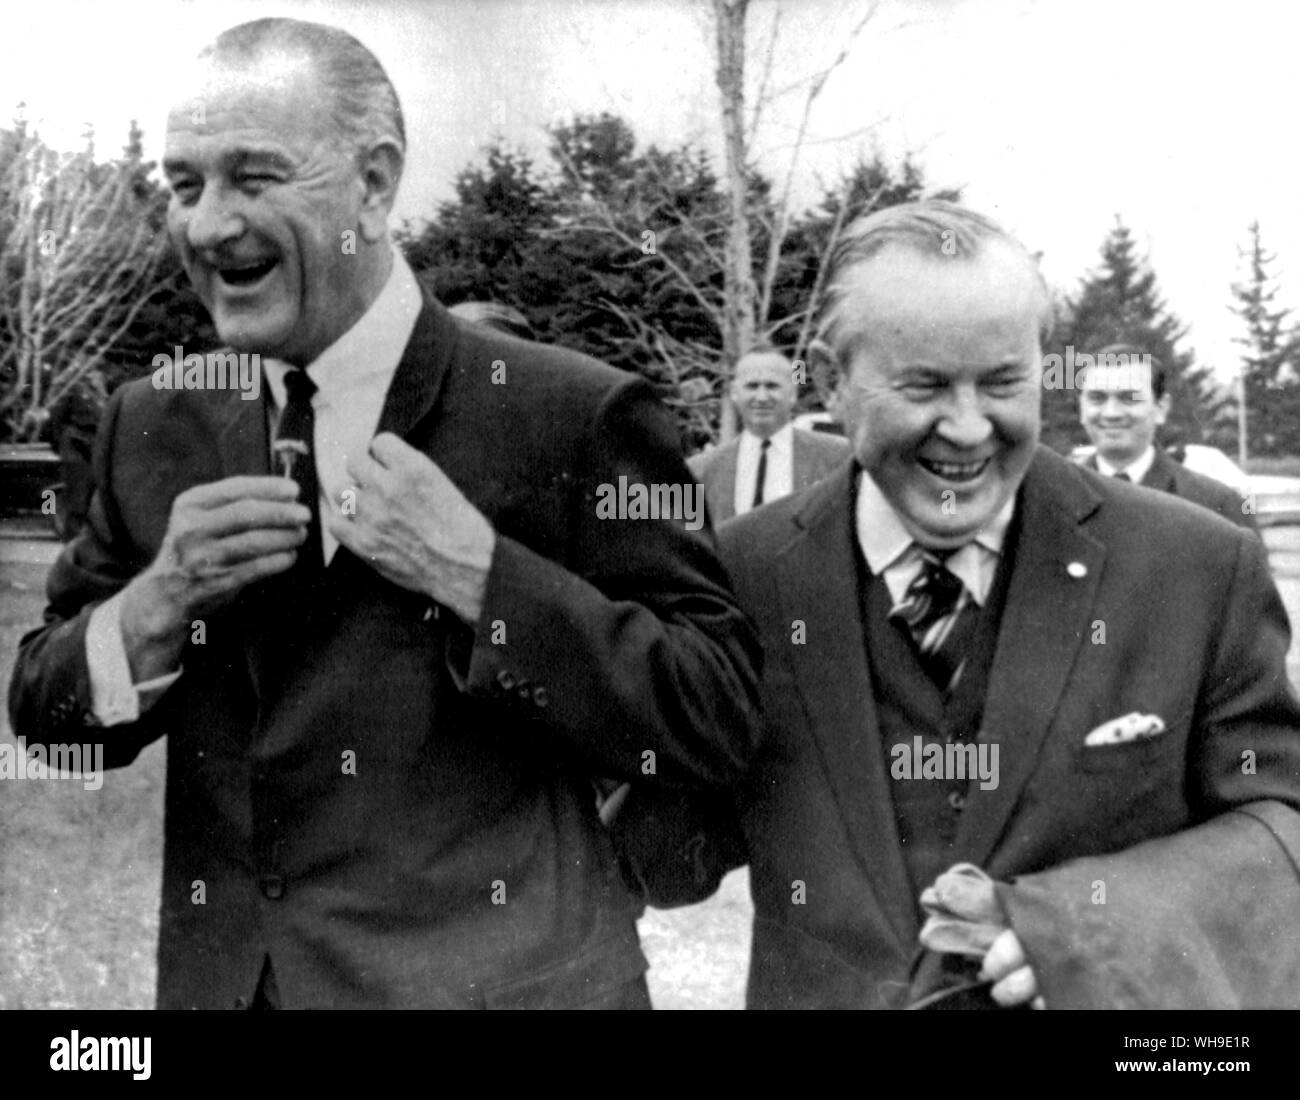 26 maggio 1967: Presidente Lyndon B. Johnson (1908-1973) e il primo ministro canadese Lester Pearson godetevi uno scherzo come Johnson (Presidente degli Stati Uniti d'America 1963-69) raccoglie un daffodil e lo mette nella sua giacca. Essi avevano visitato Expo 67 a Montreal, Canada. Foto Stock